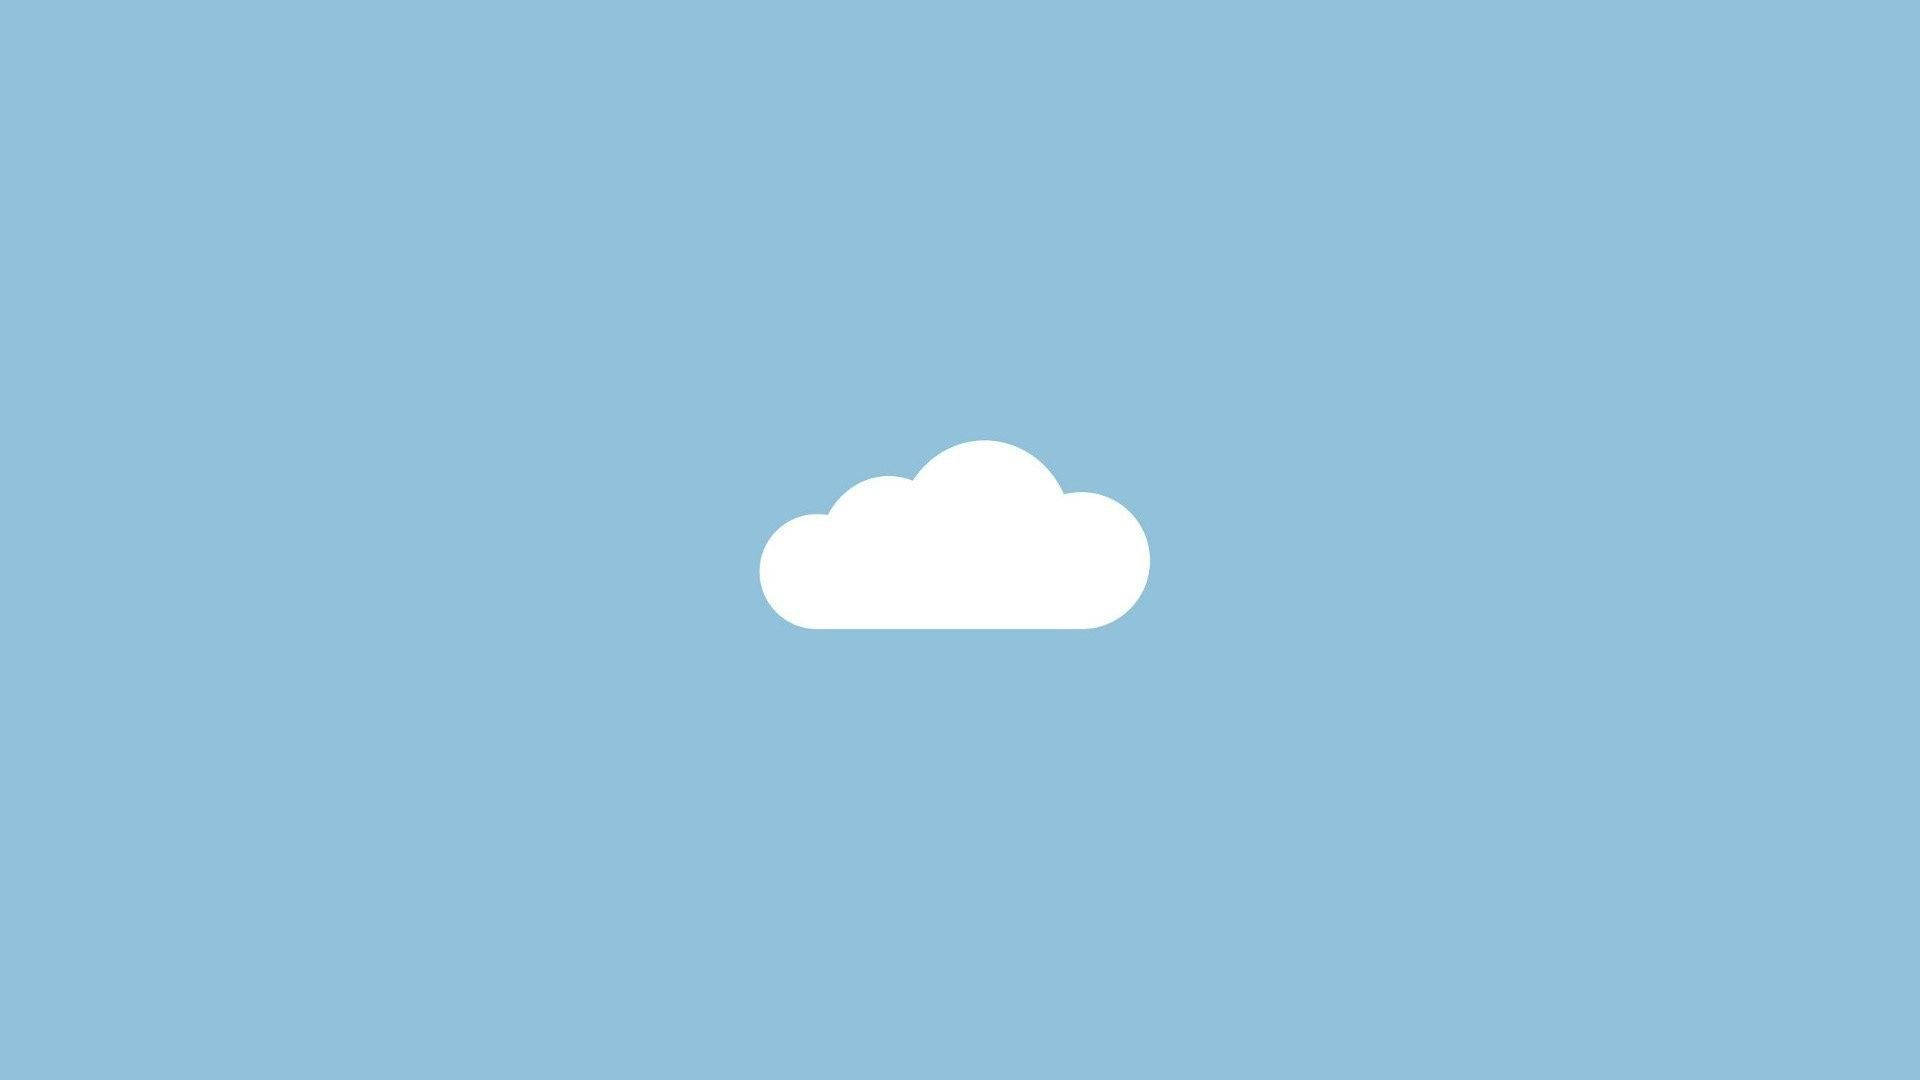 Cloud In A Baby Blue Sky Wallpaper